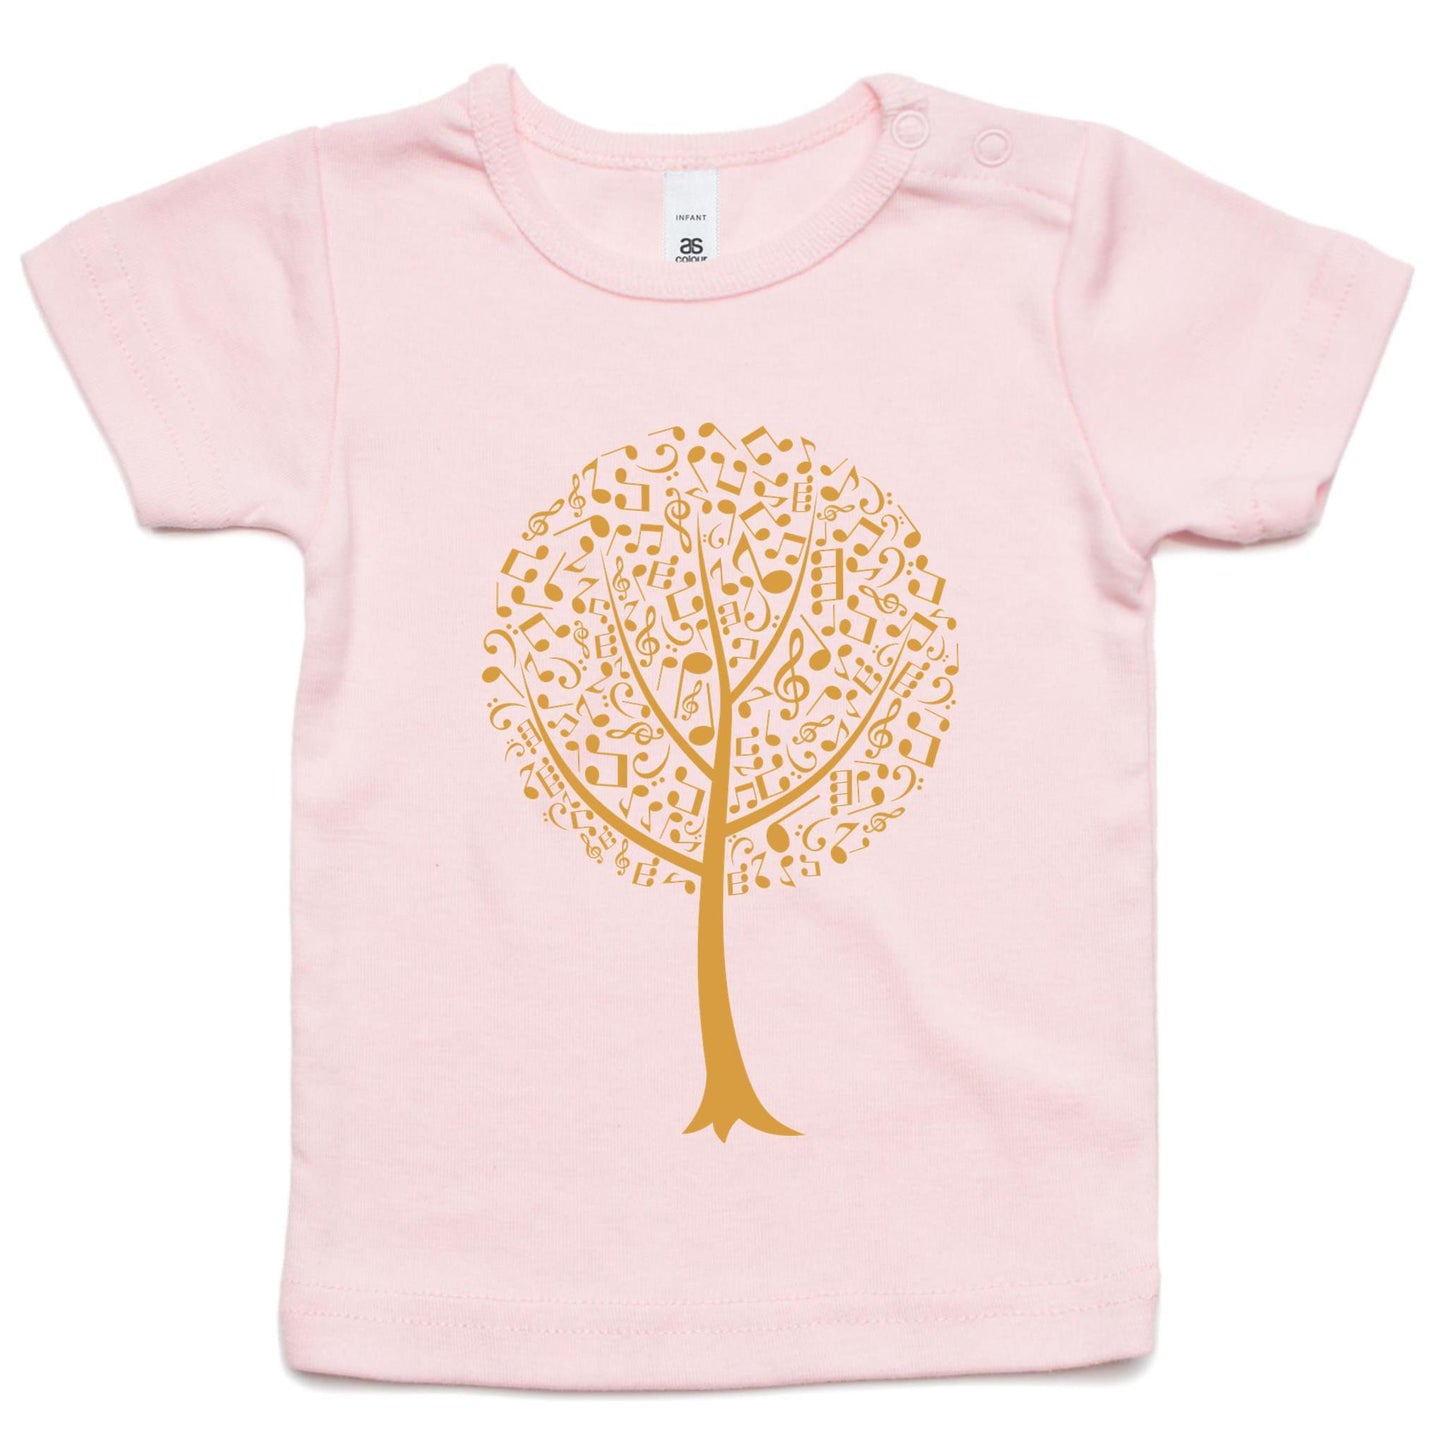 Music Tree - Baby T-shirt Pink Baby T-shirt kids Music Plants